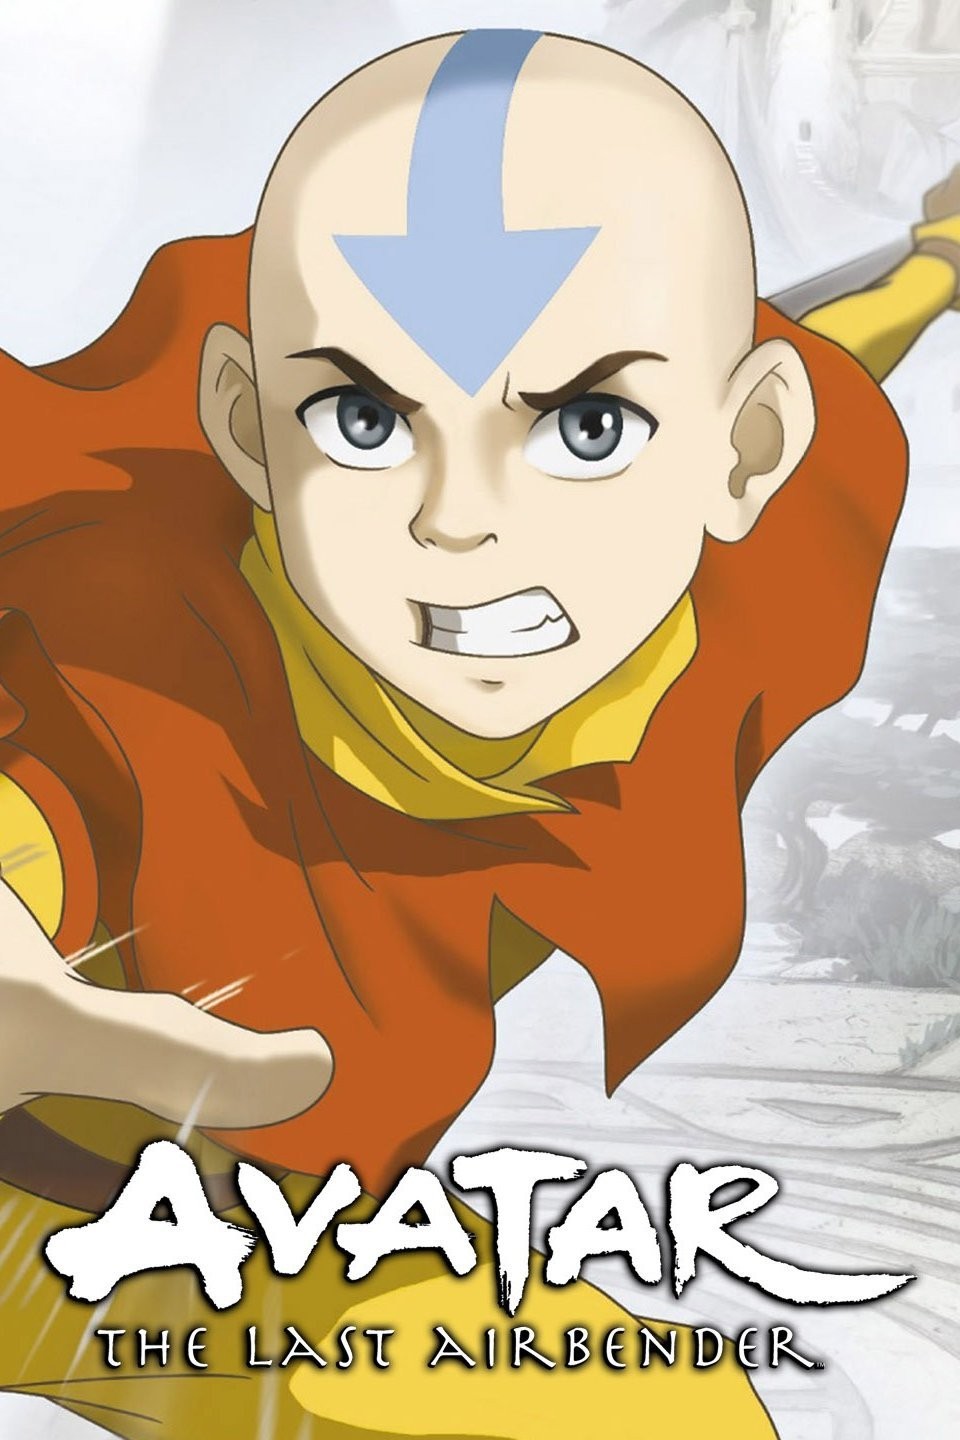 21 King's avatar ideas  king's avatar, avatar, the king's avatar anime